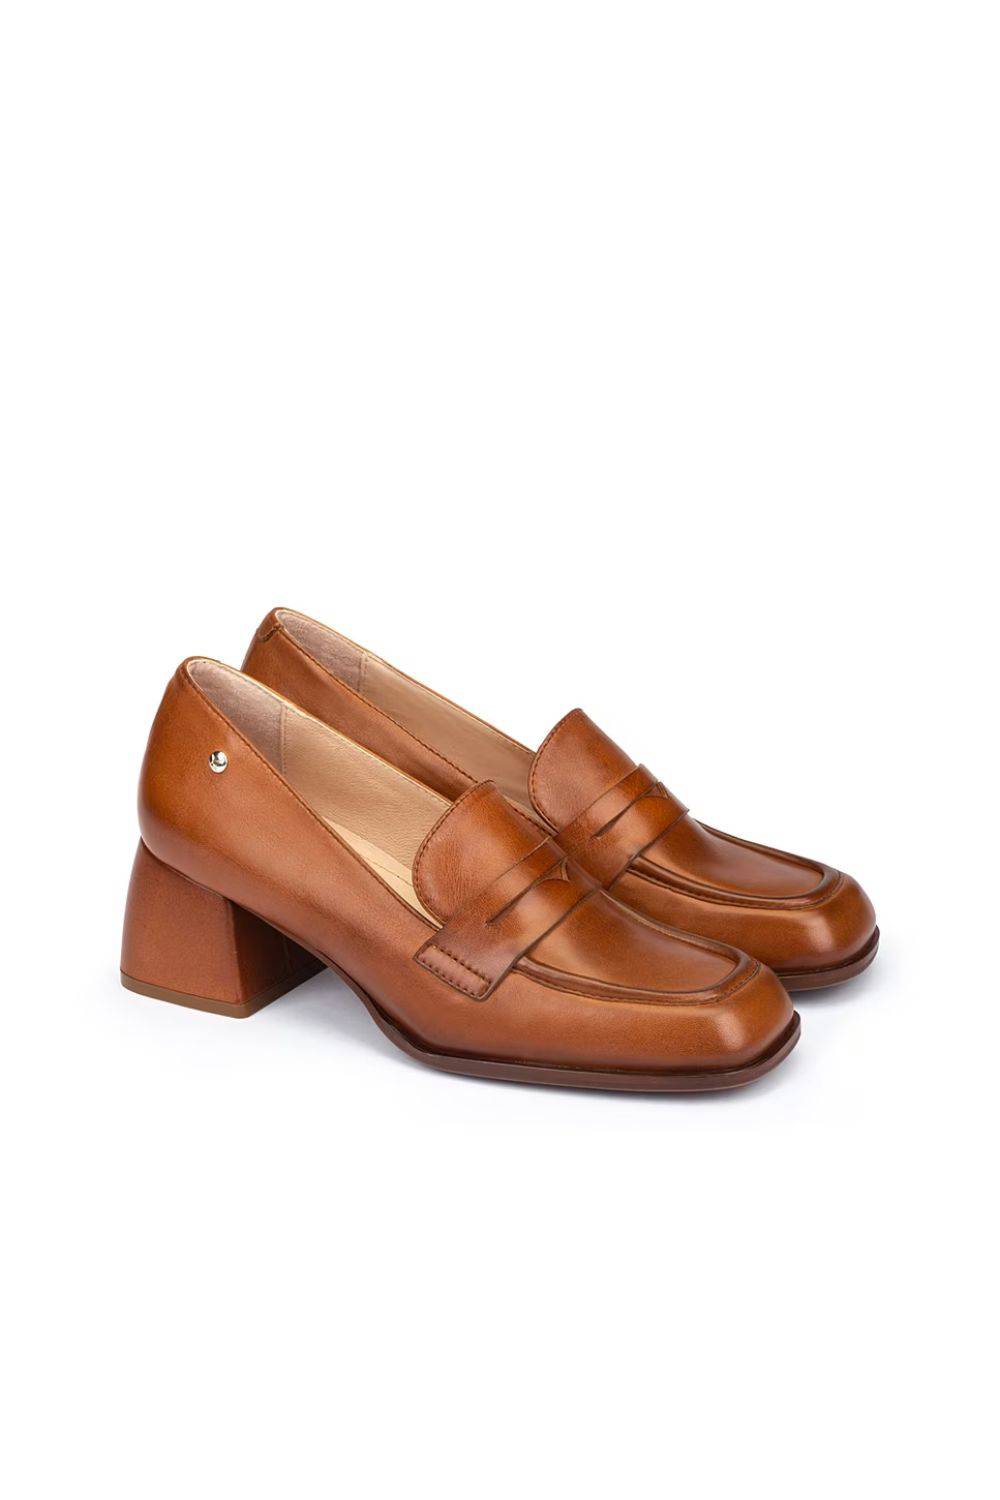 Zapatos de salón de mujer de piel en color marrón